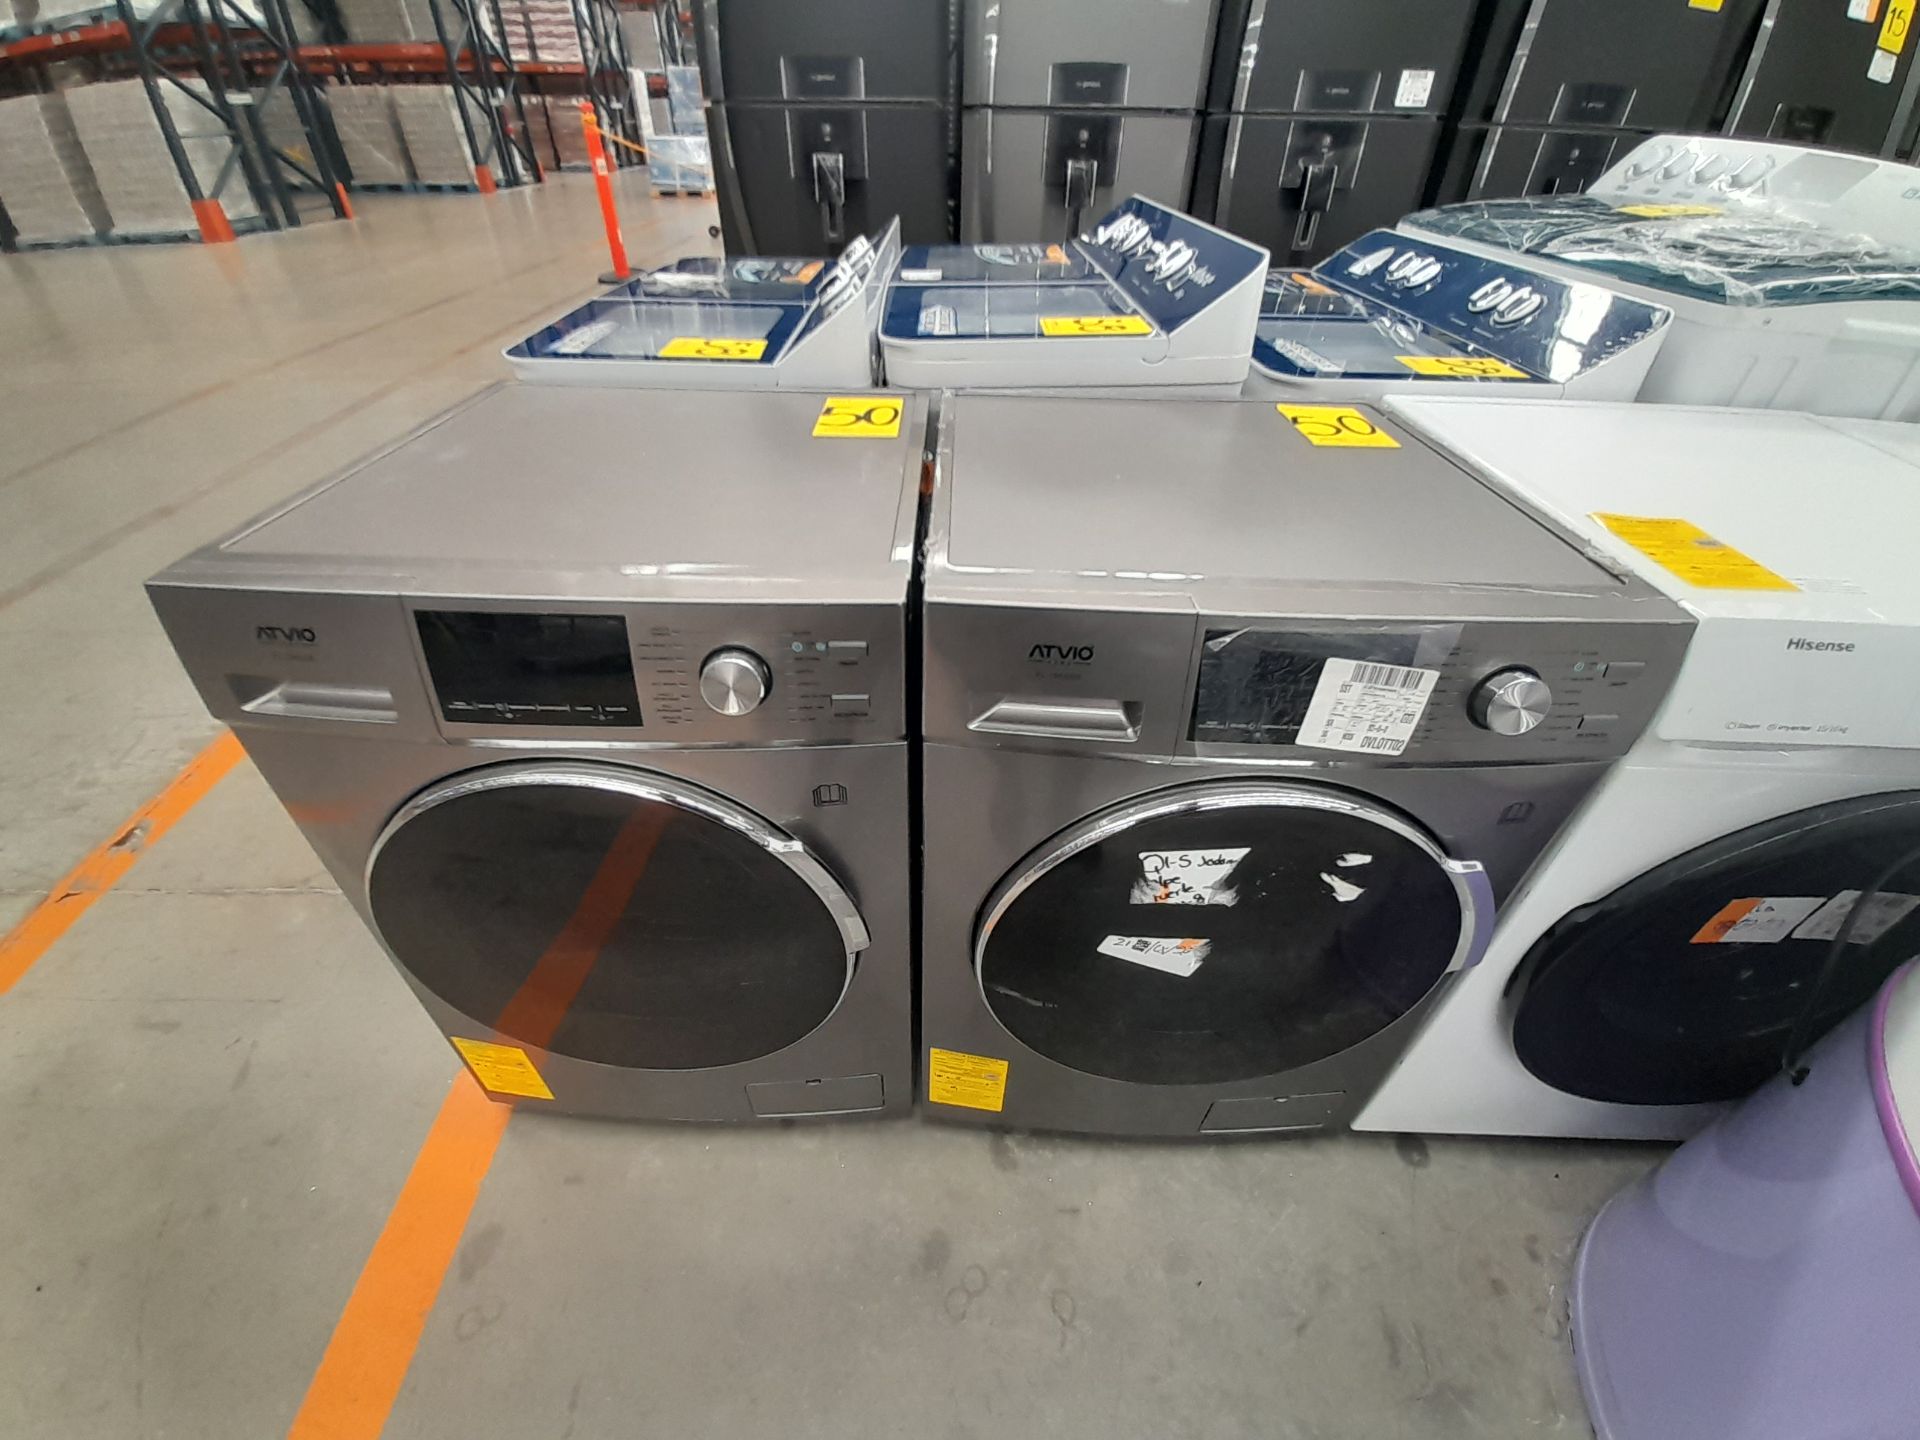 Lote de 2 lavadoras contiene: 1 lavadora de 15 KG, Marca ATVIO, Modelo FL15KGDS, Serie ND, Color GR